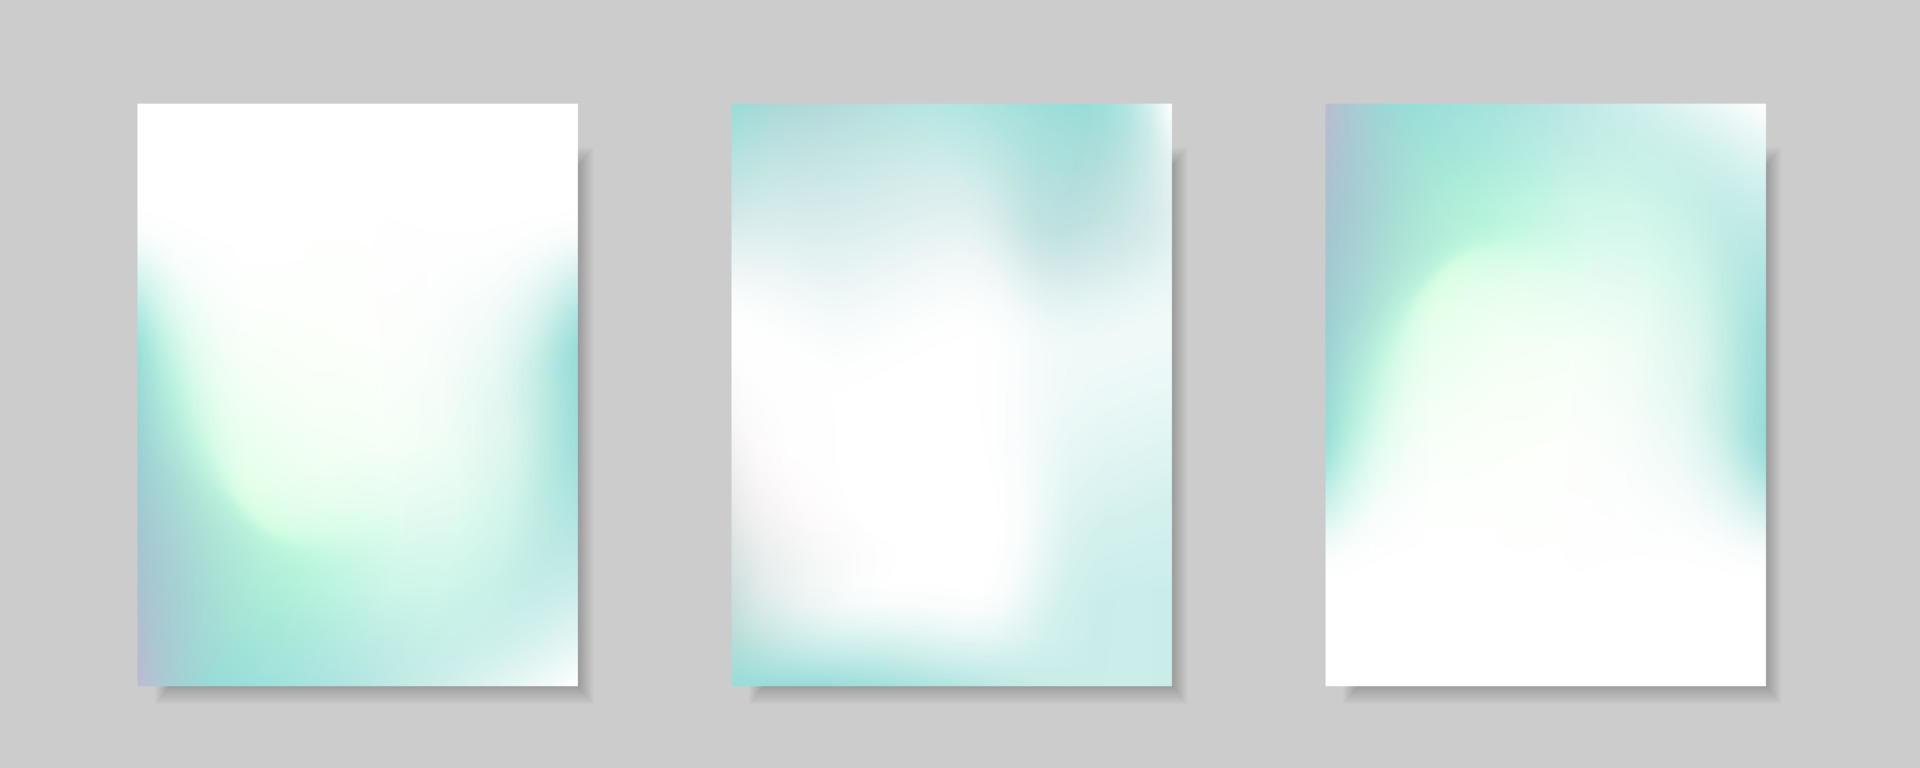 raccolta di sfondi di copertina vettoriali sfumati di colore bianco blu astratti. per sfondi di brochure aziendali, carte, sfondi, poster e disegni grafici. modello di illustrazione